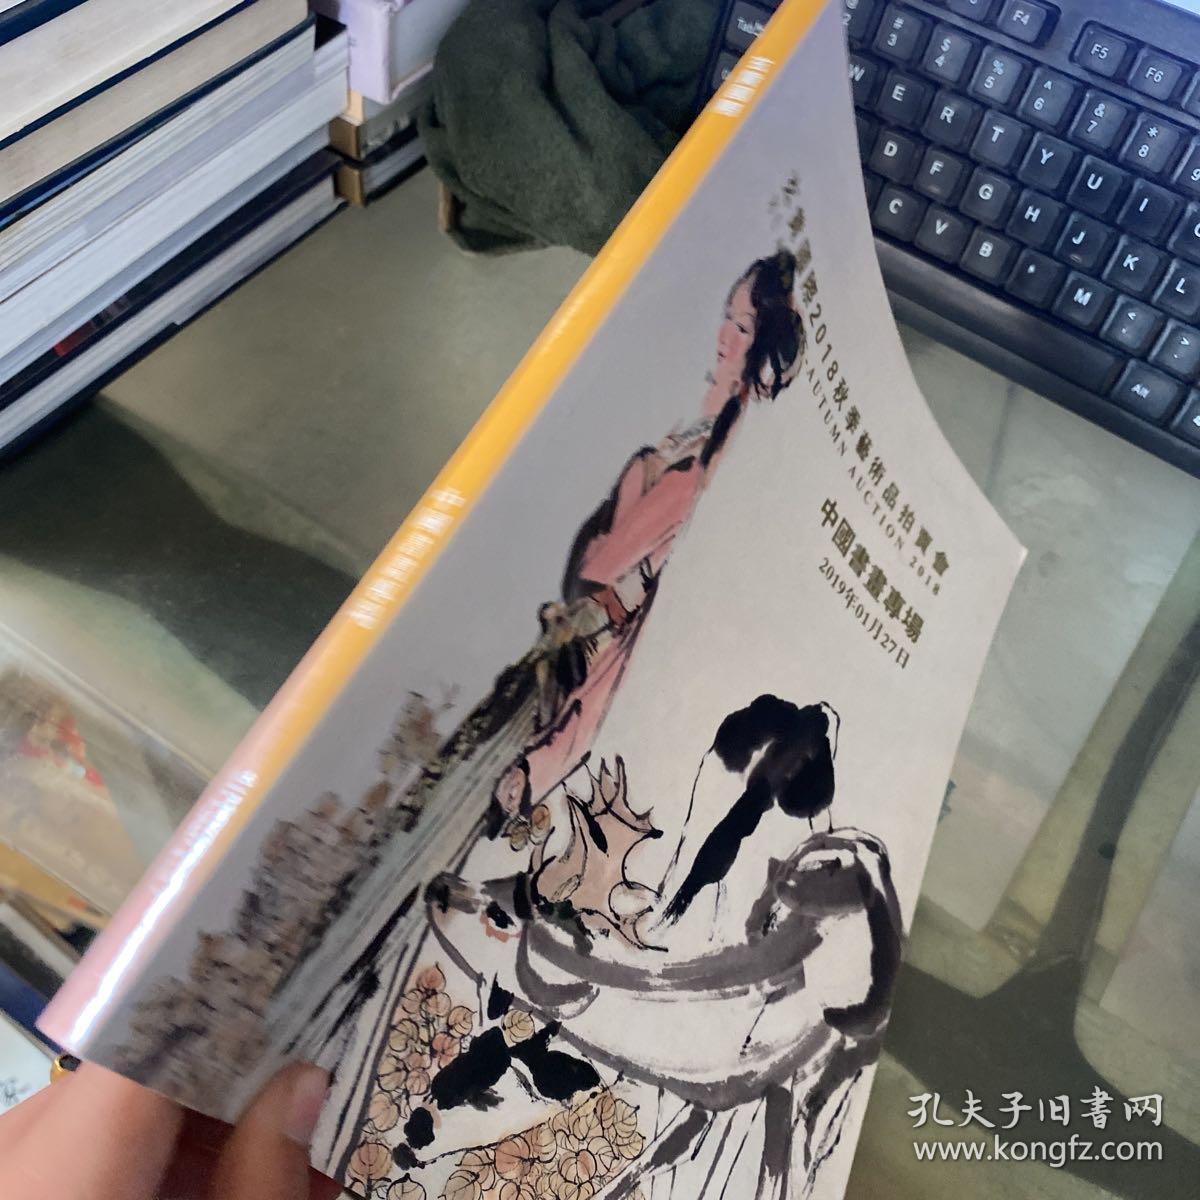 玄黄国际2018秋季艺术品拍卖会 中国书画专场 看图